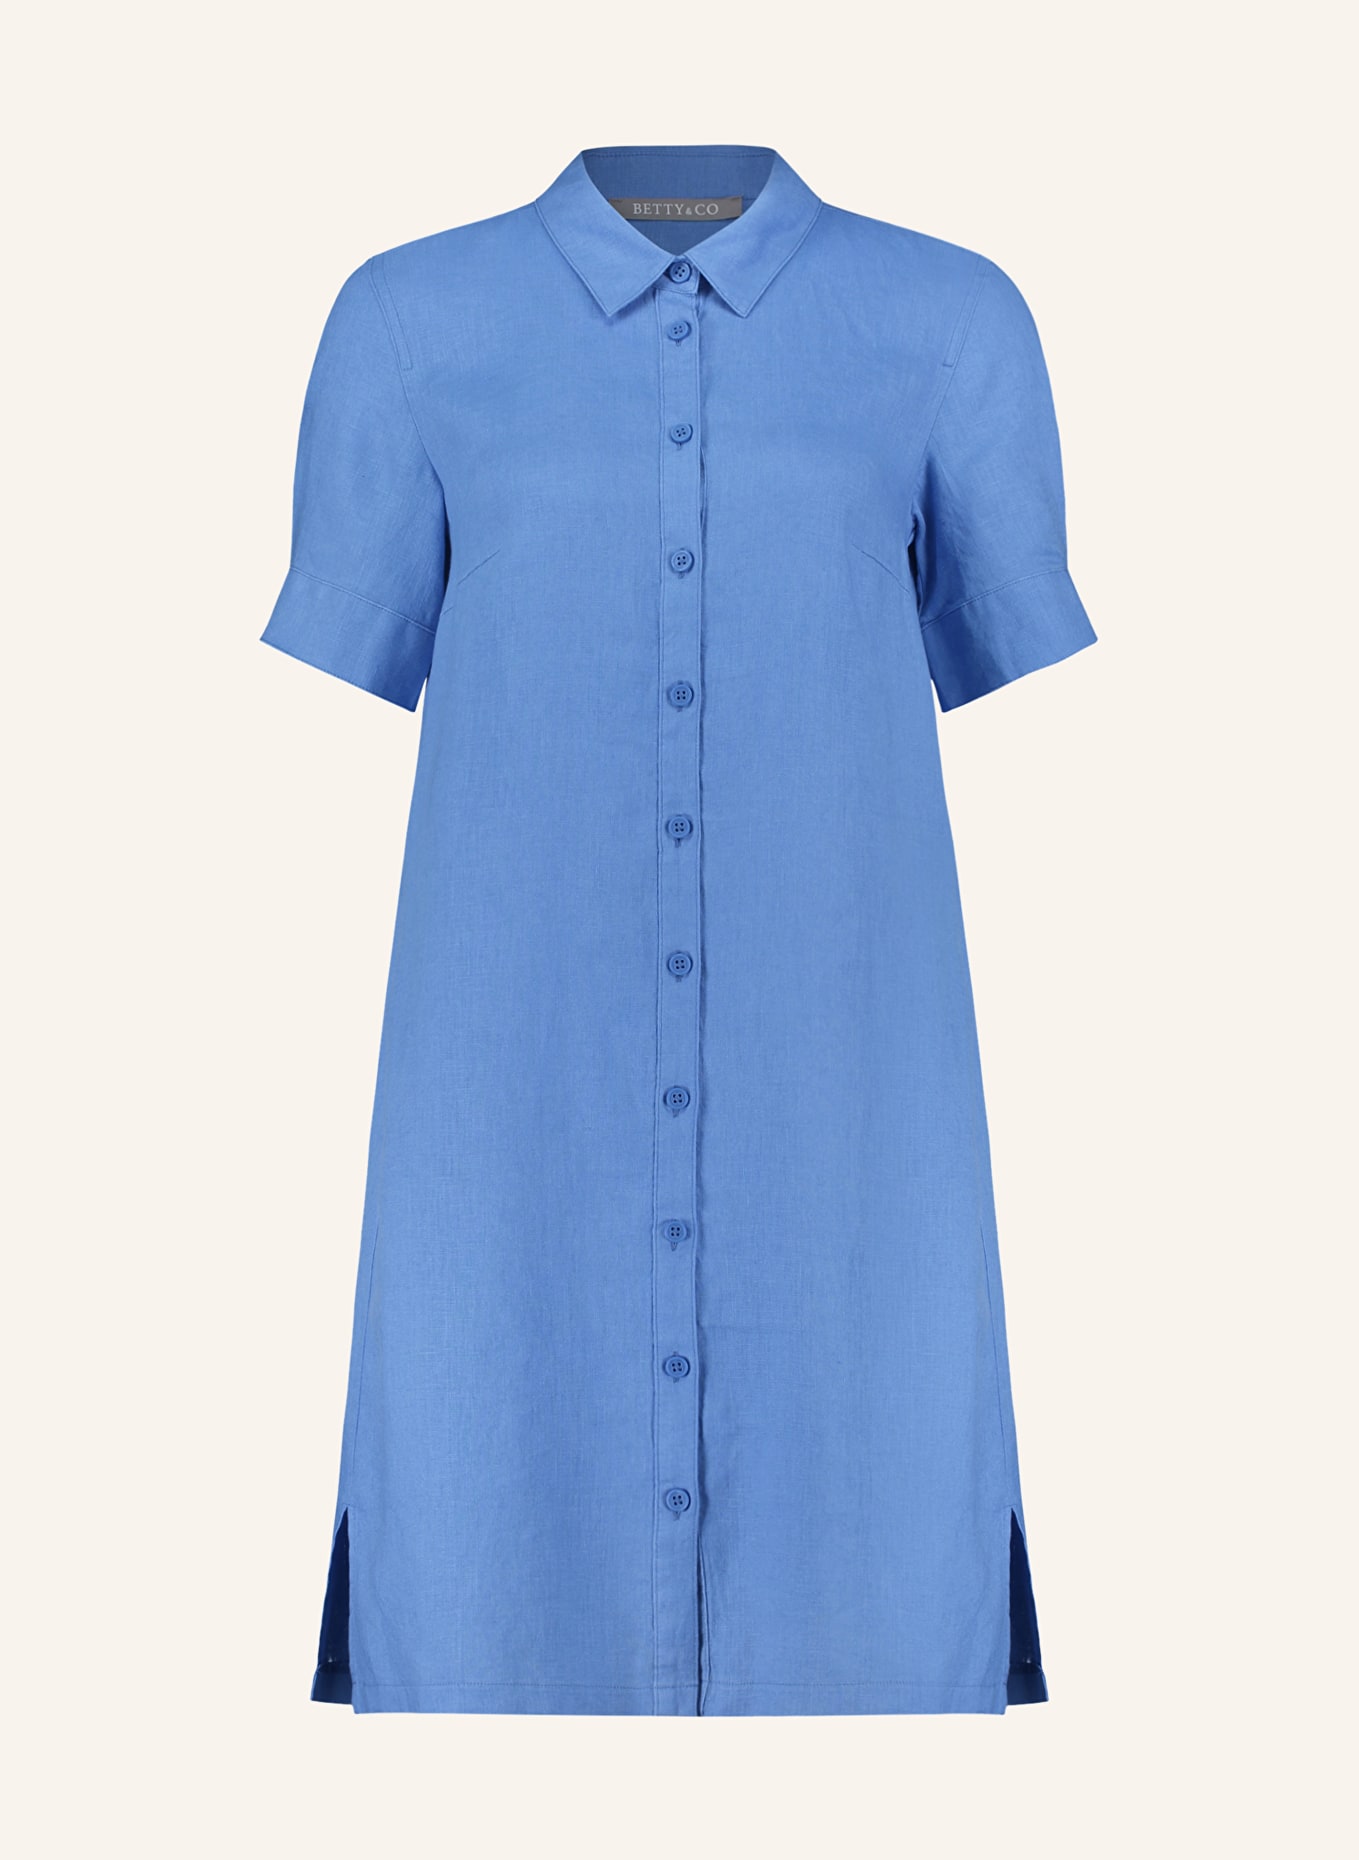 BETTY&CO Hemdblusenkleid aus Leinen, Farbe: BLAU (Bild 1)